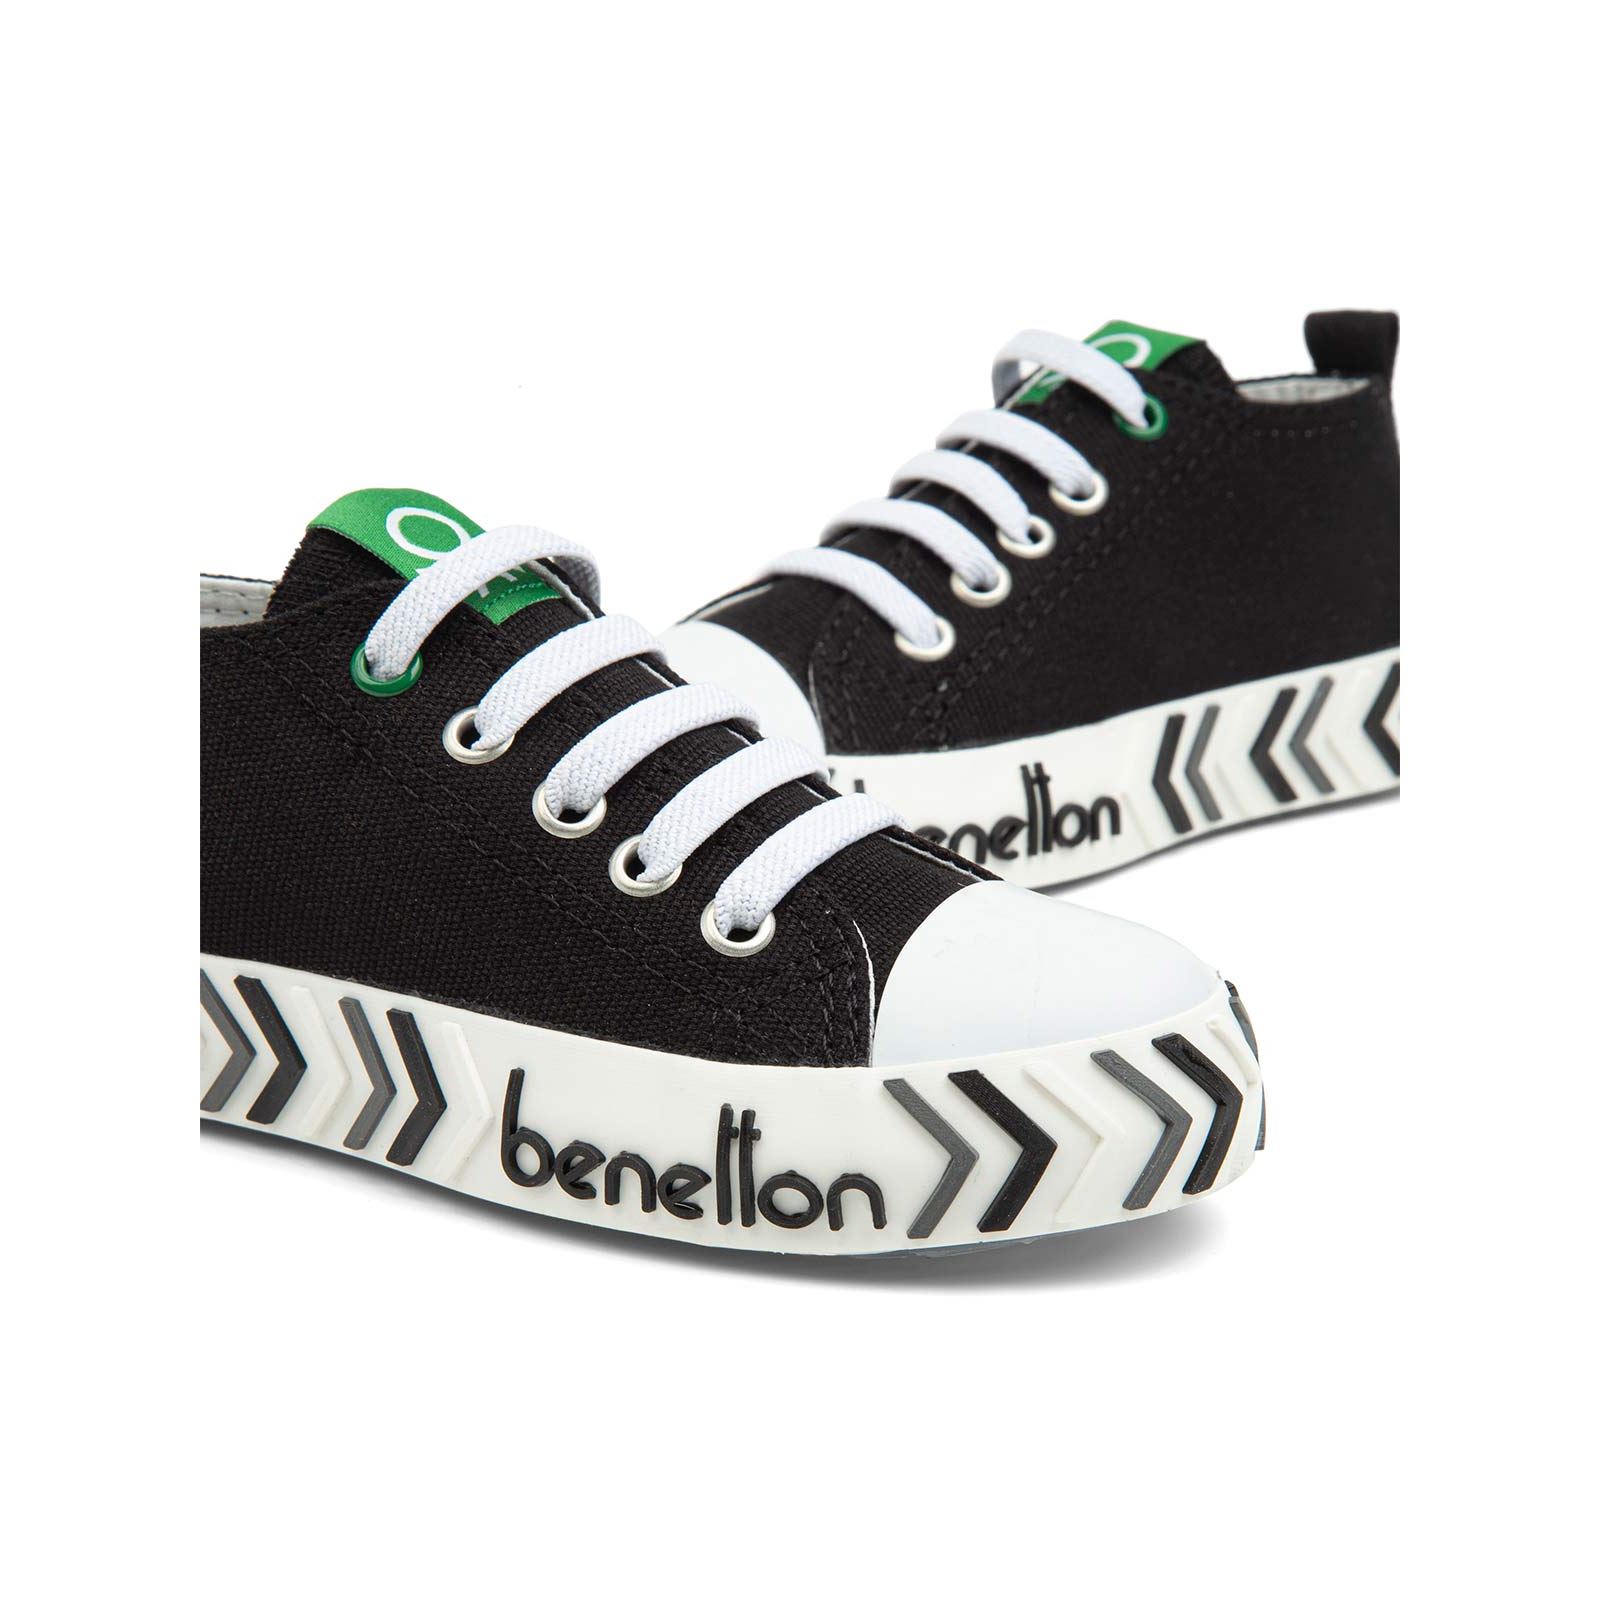 Benetton Erkek Çocuk Spor Ayakkabı 26-30 Numara Siyah